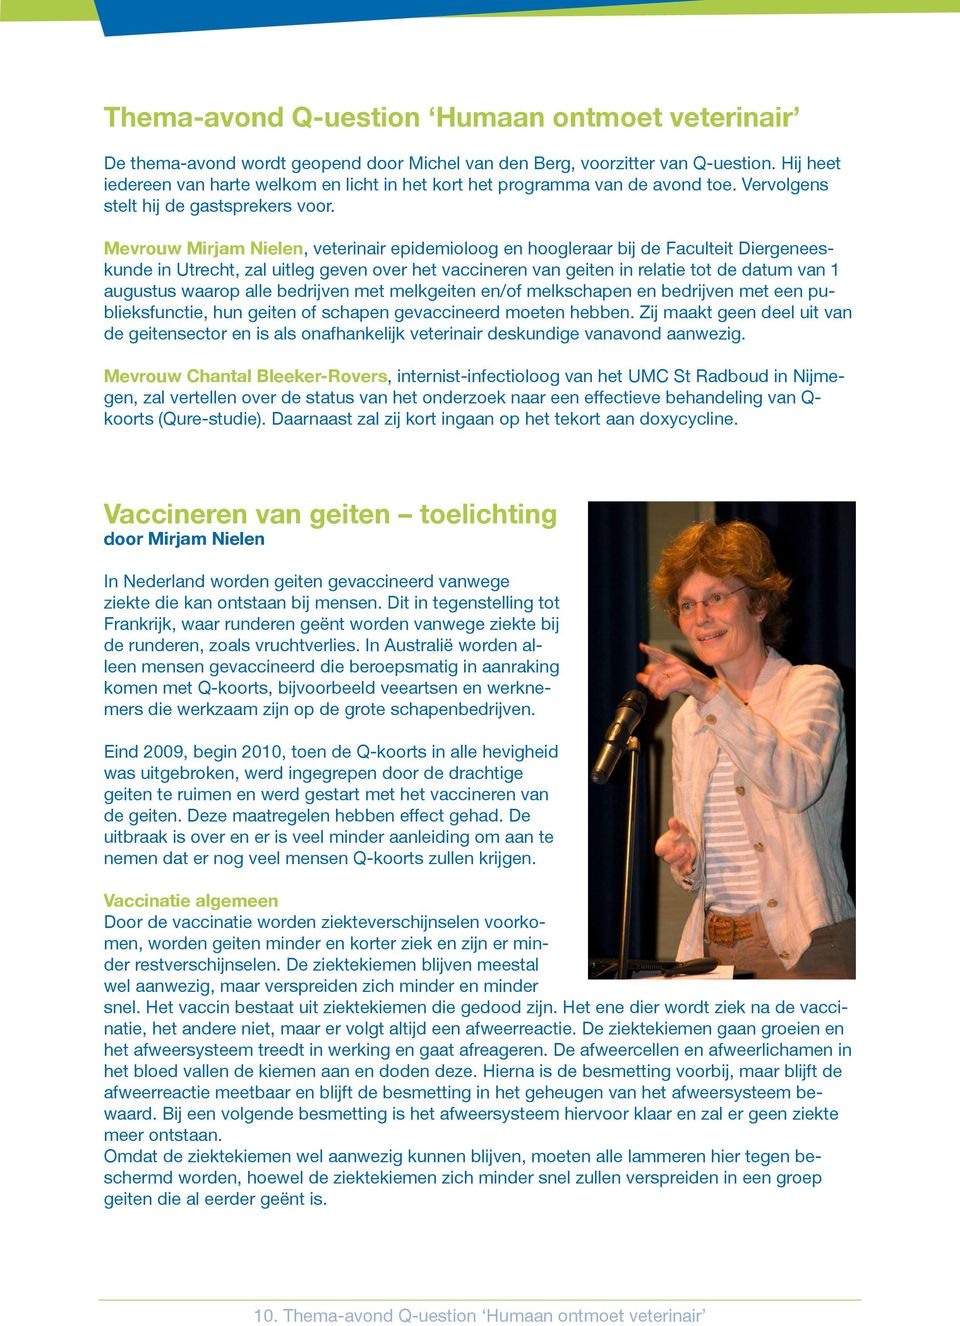 Mevrouw Mirjam Nielen, veterinair epidemioloog en hoogleraar bij de Faculteit Diergeneeskunde in Utrecht, zal uitleg geven over het vaccineren van geiten in relatie tot de datum van 1 augustus waarop